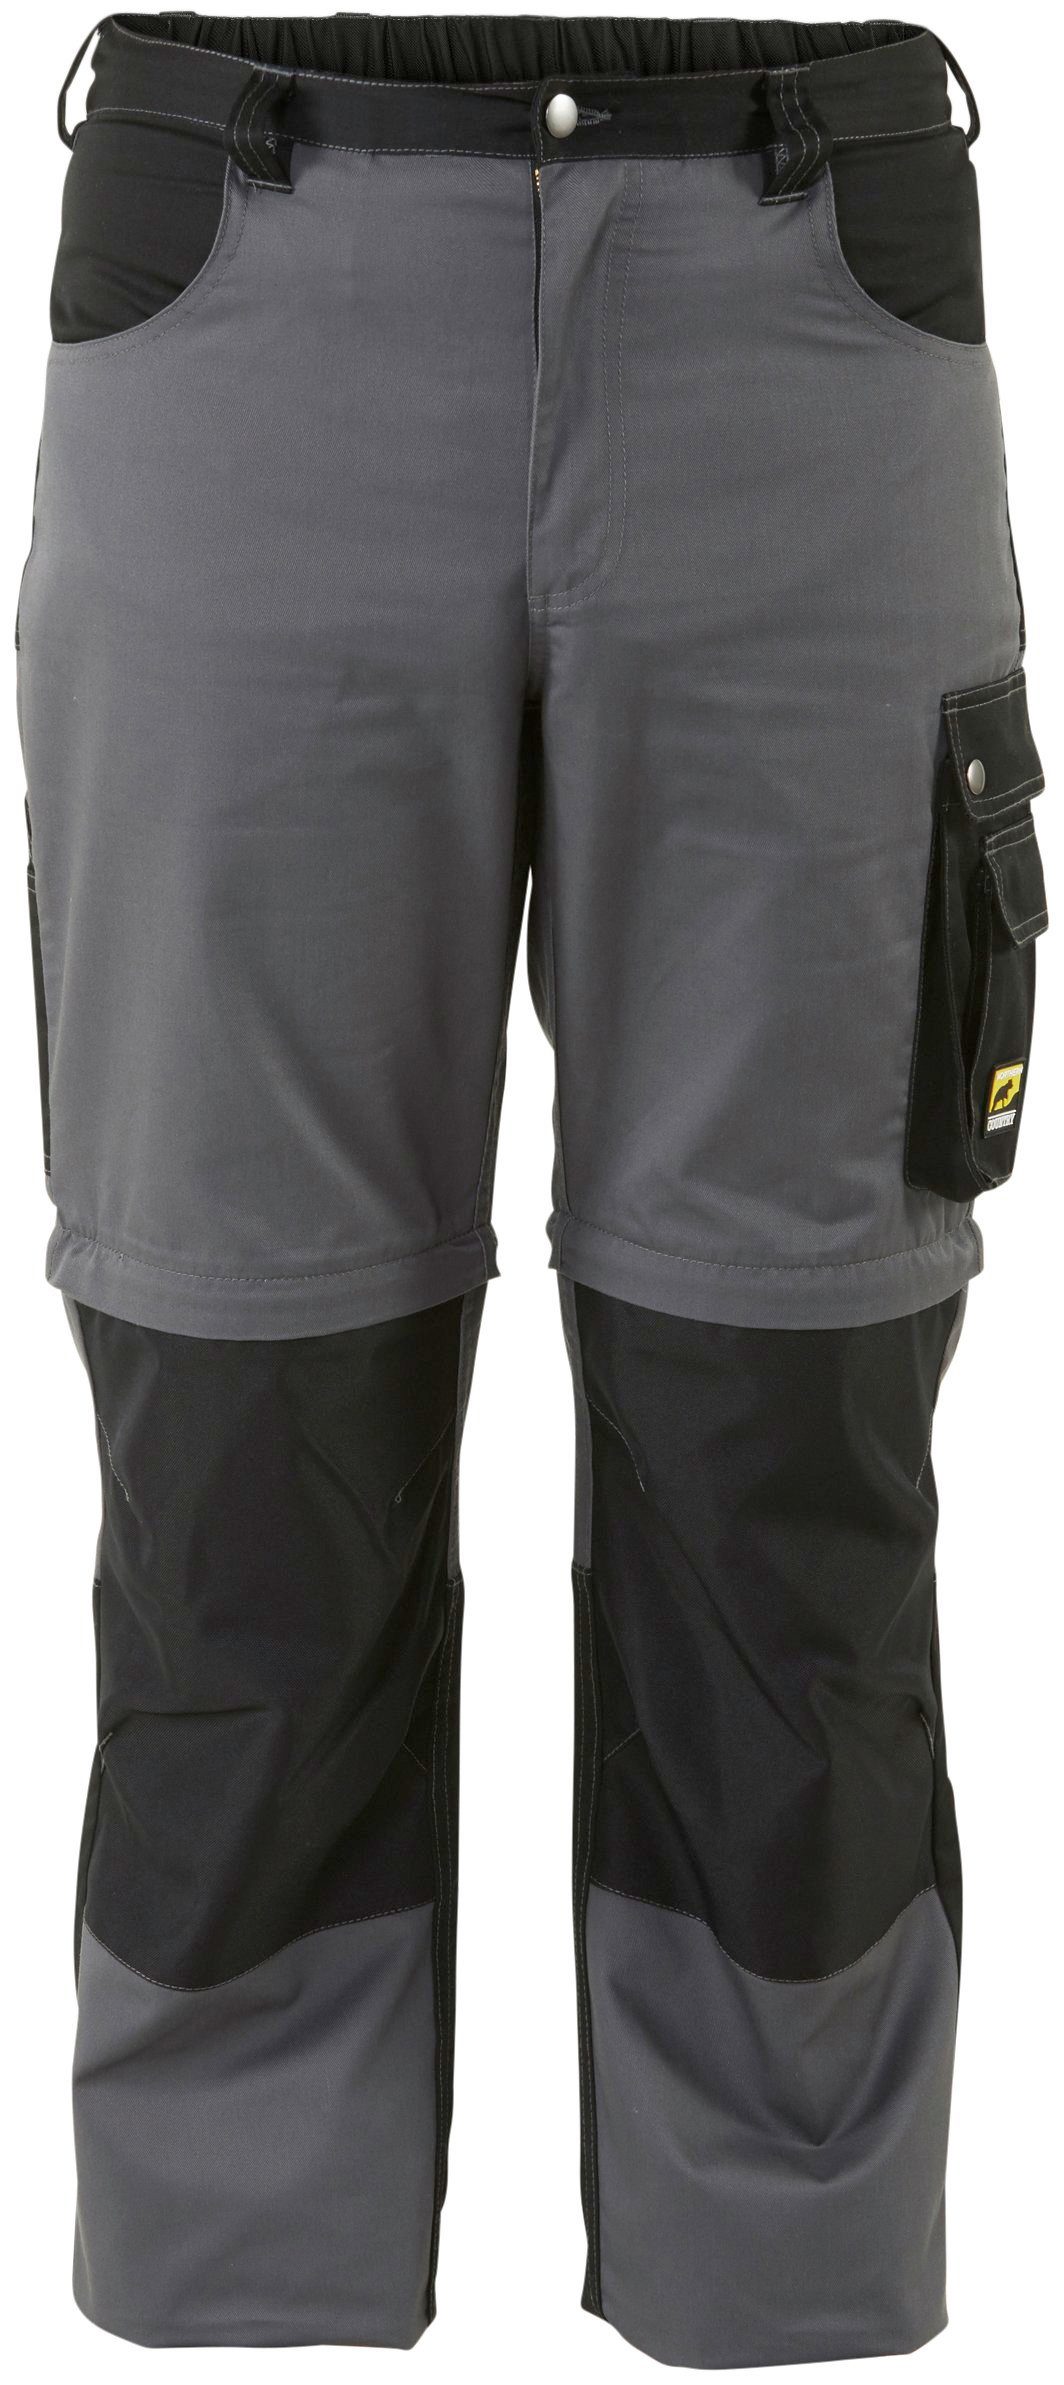 Northern Country Arbeitshose Worker (verstärkter Kniebereich, Beinverlängerung möglich, 8 Taschen) mit Zipp-off Funktion: Shorts und lange Arbeitshose in einem | Arbeitshosen